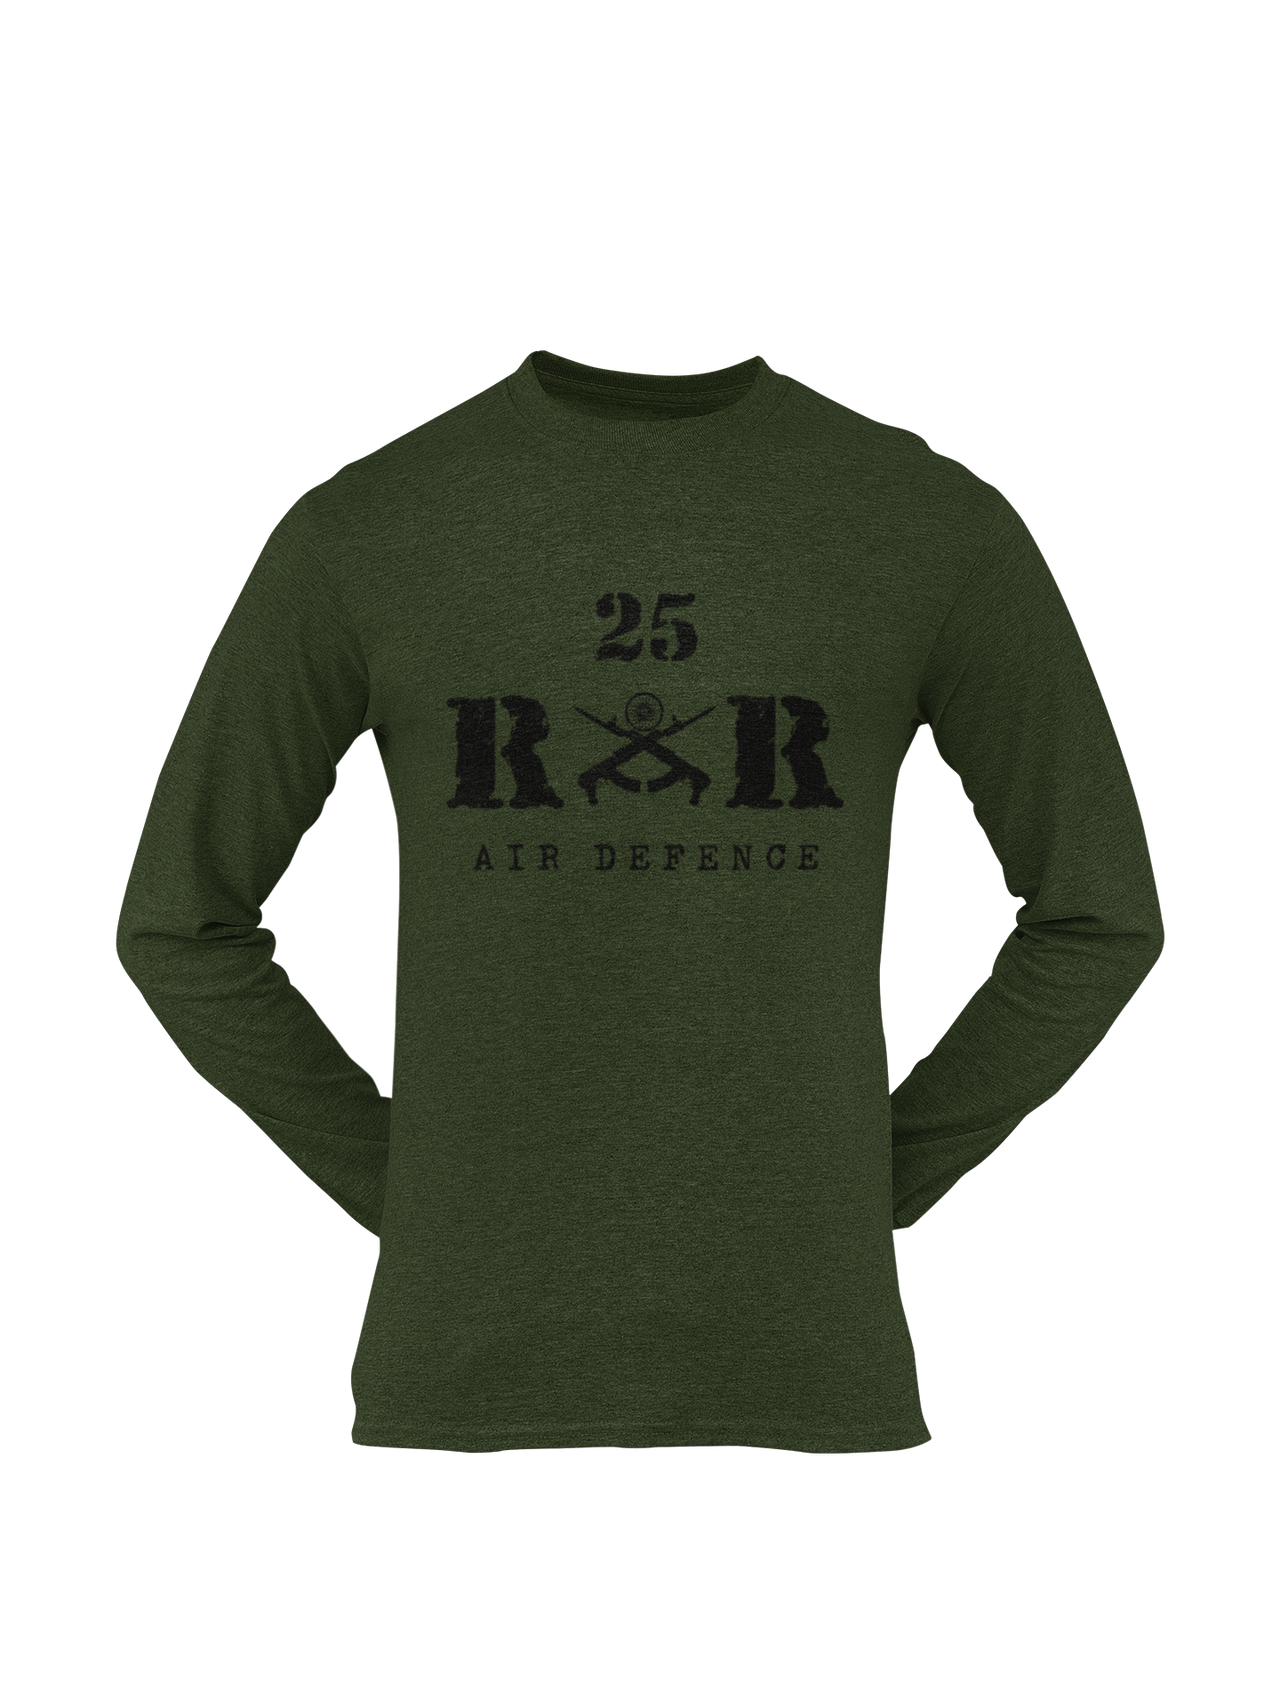 Rashtriya Rifles T-shirt - 25 RR Air Defence (Men)